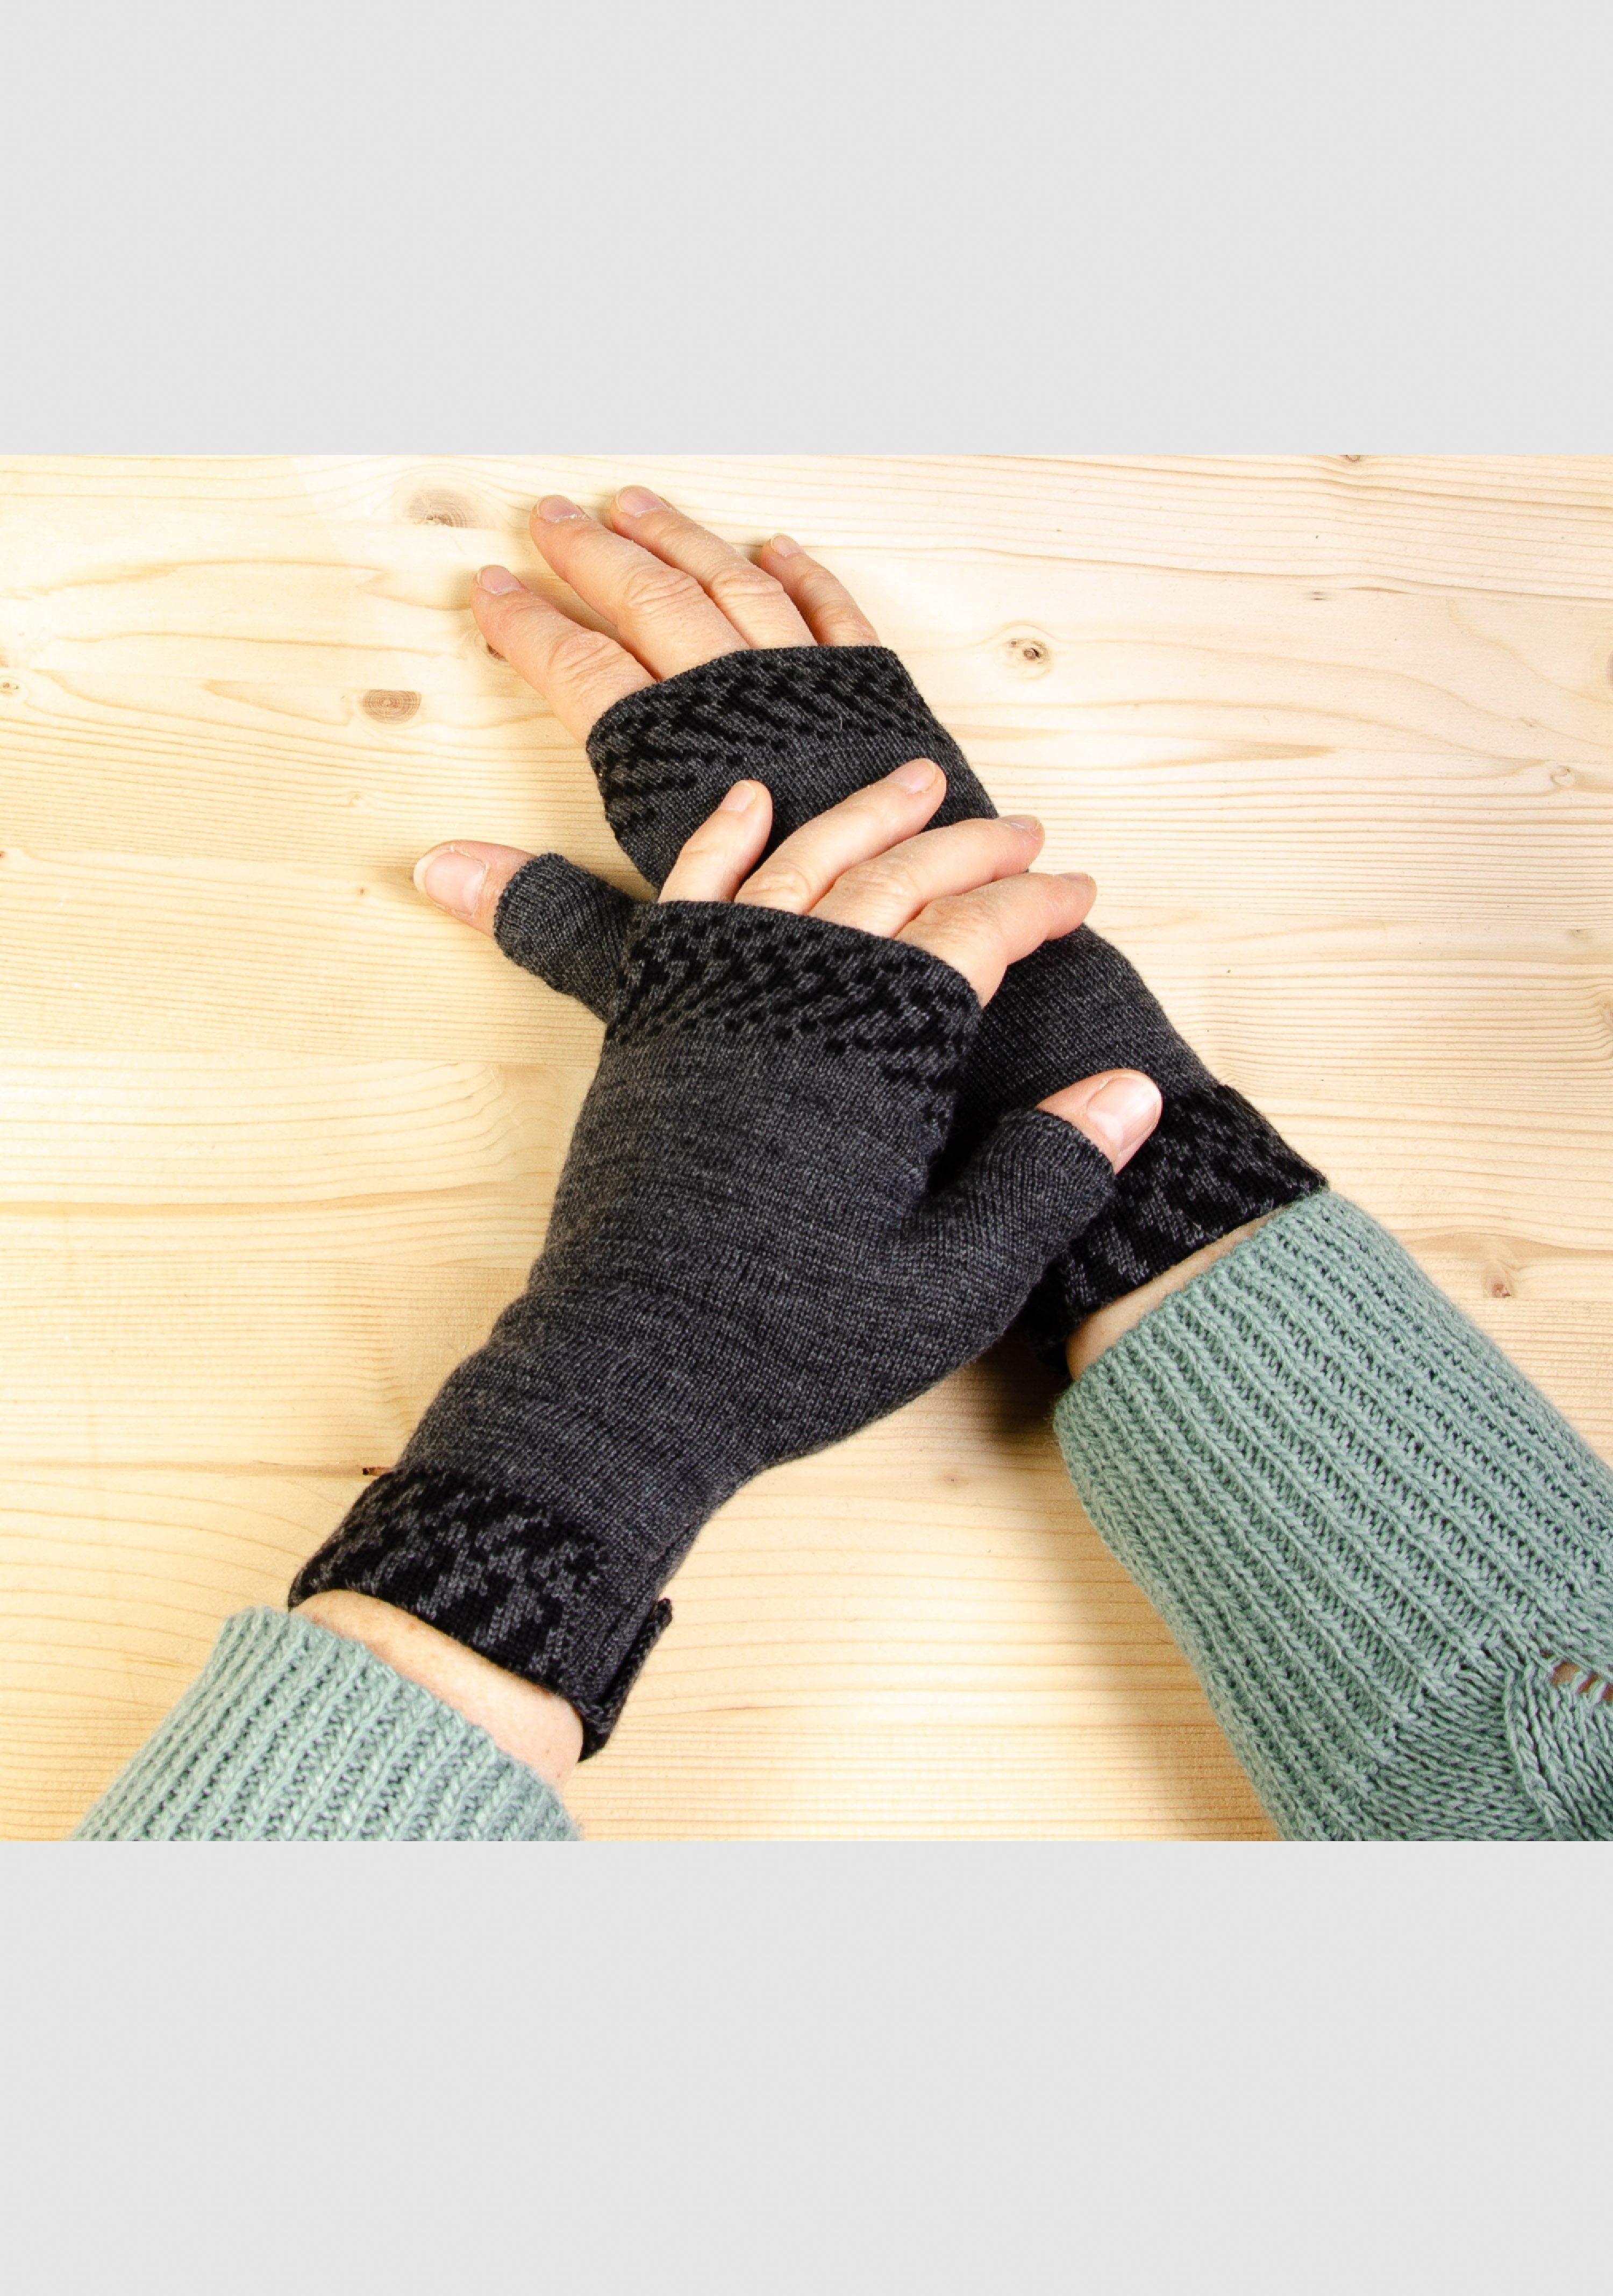 LANARTO slow fashion Strickhandschuhe Merino Handwärmer Pixel in vielen Farben aus 100% Merino extrasoft anthrazit_schwarz | Strickhandschuhe